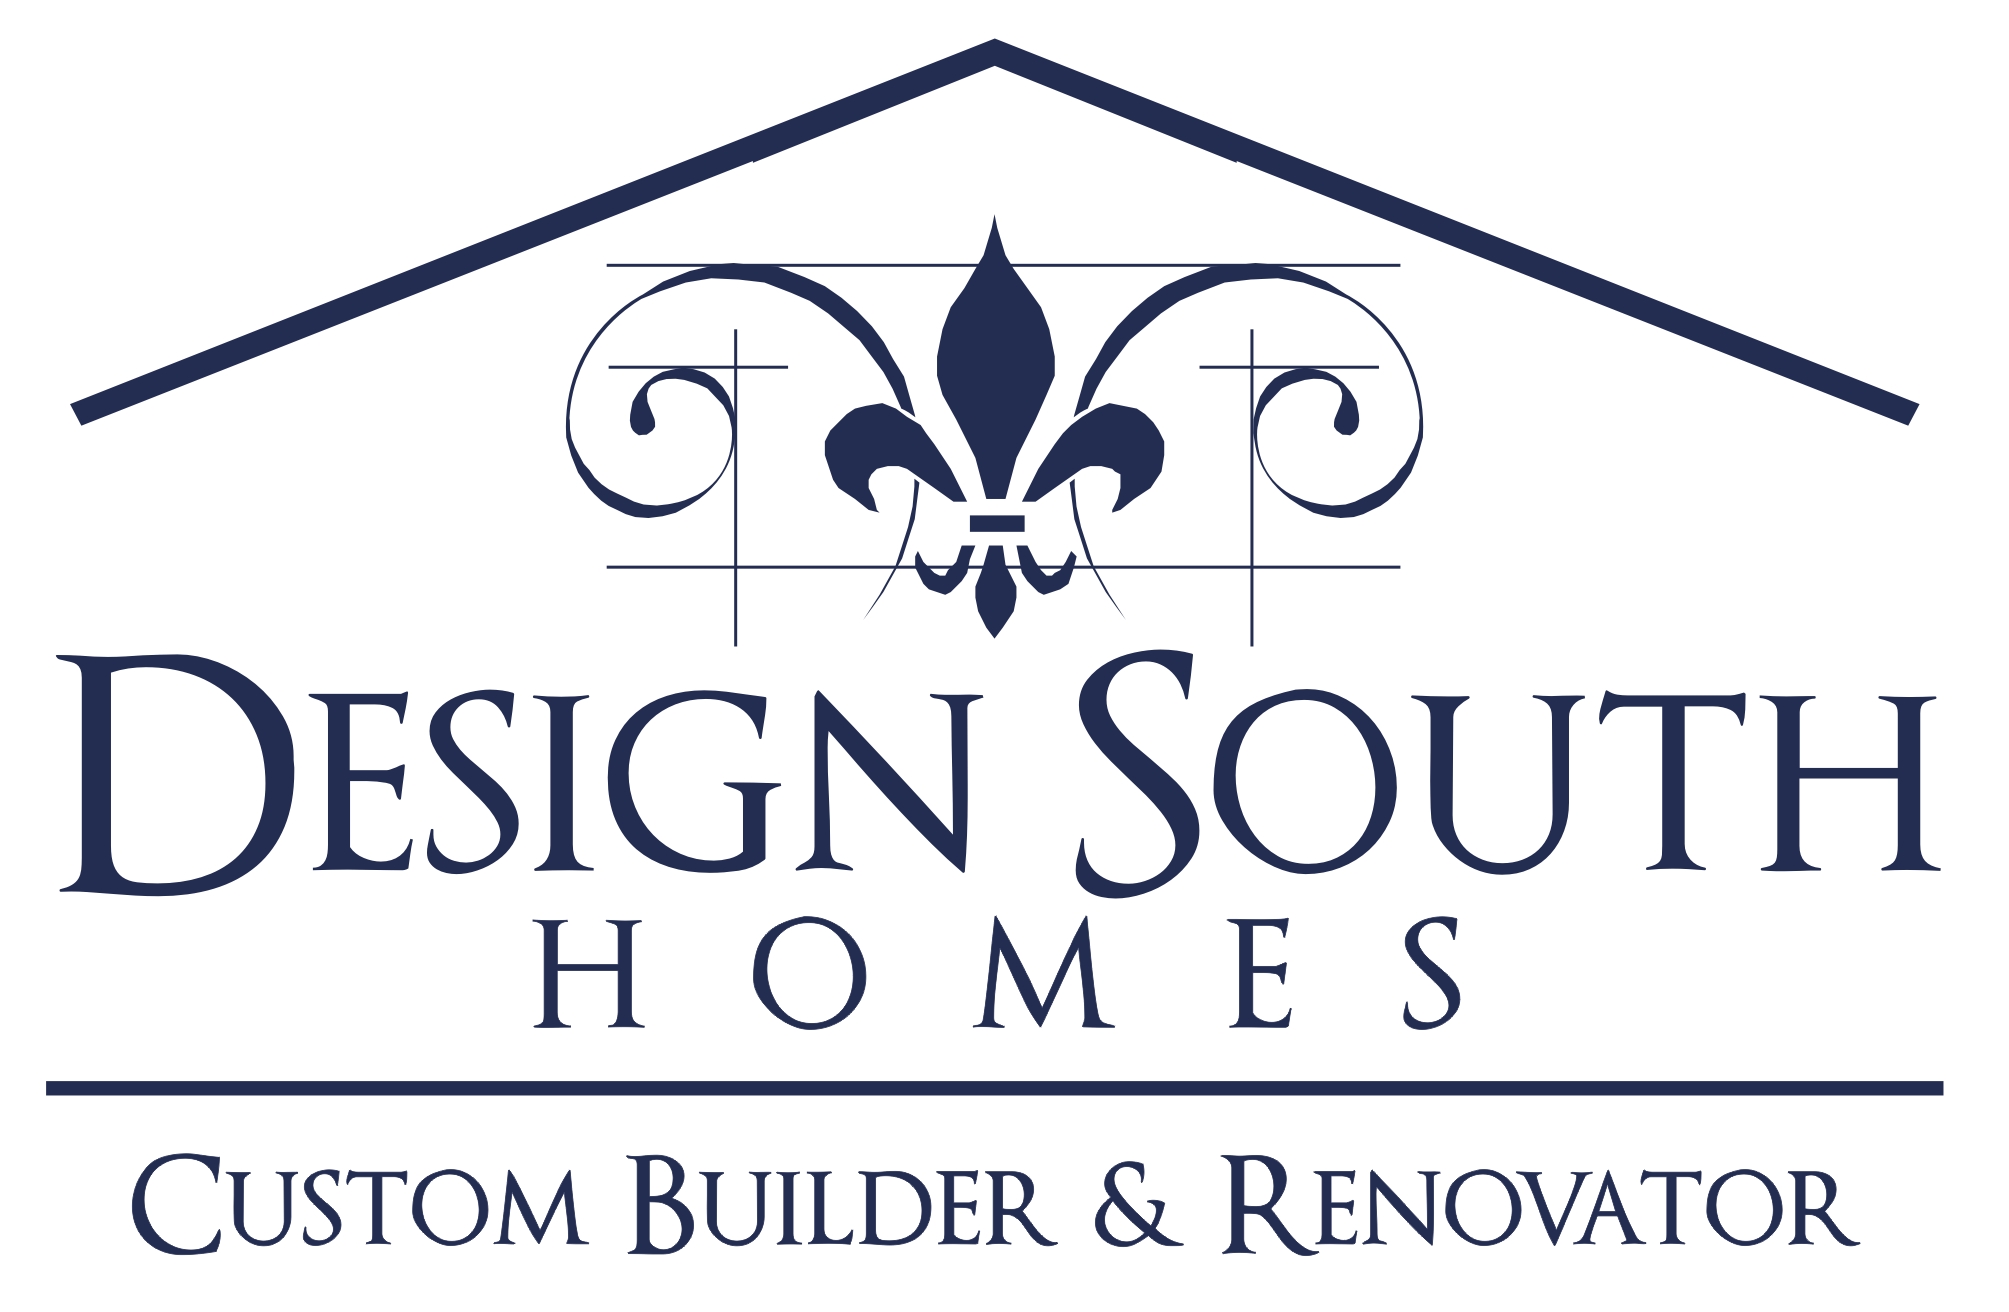 Custom Home Builders Orlando Design South Homes 352 308 7796